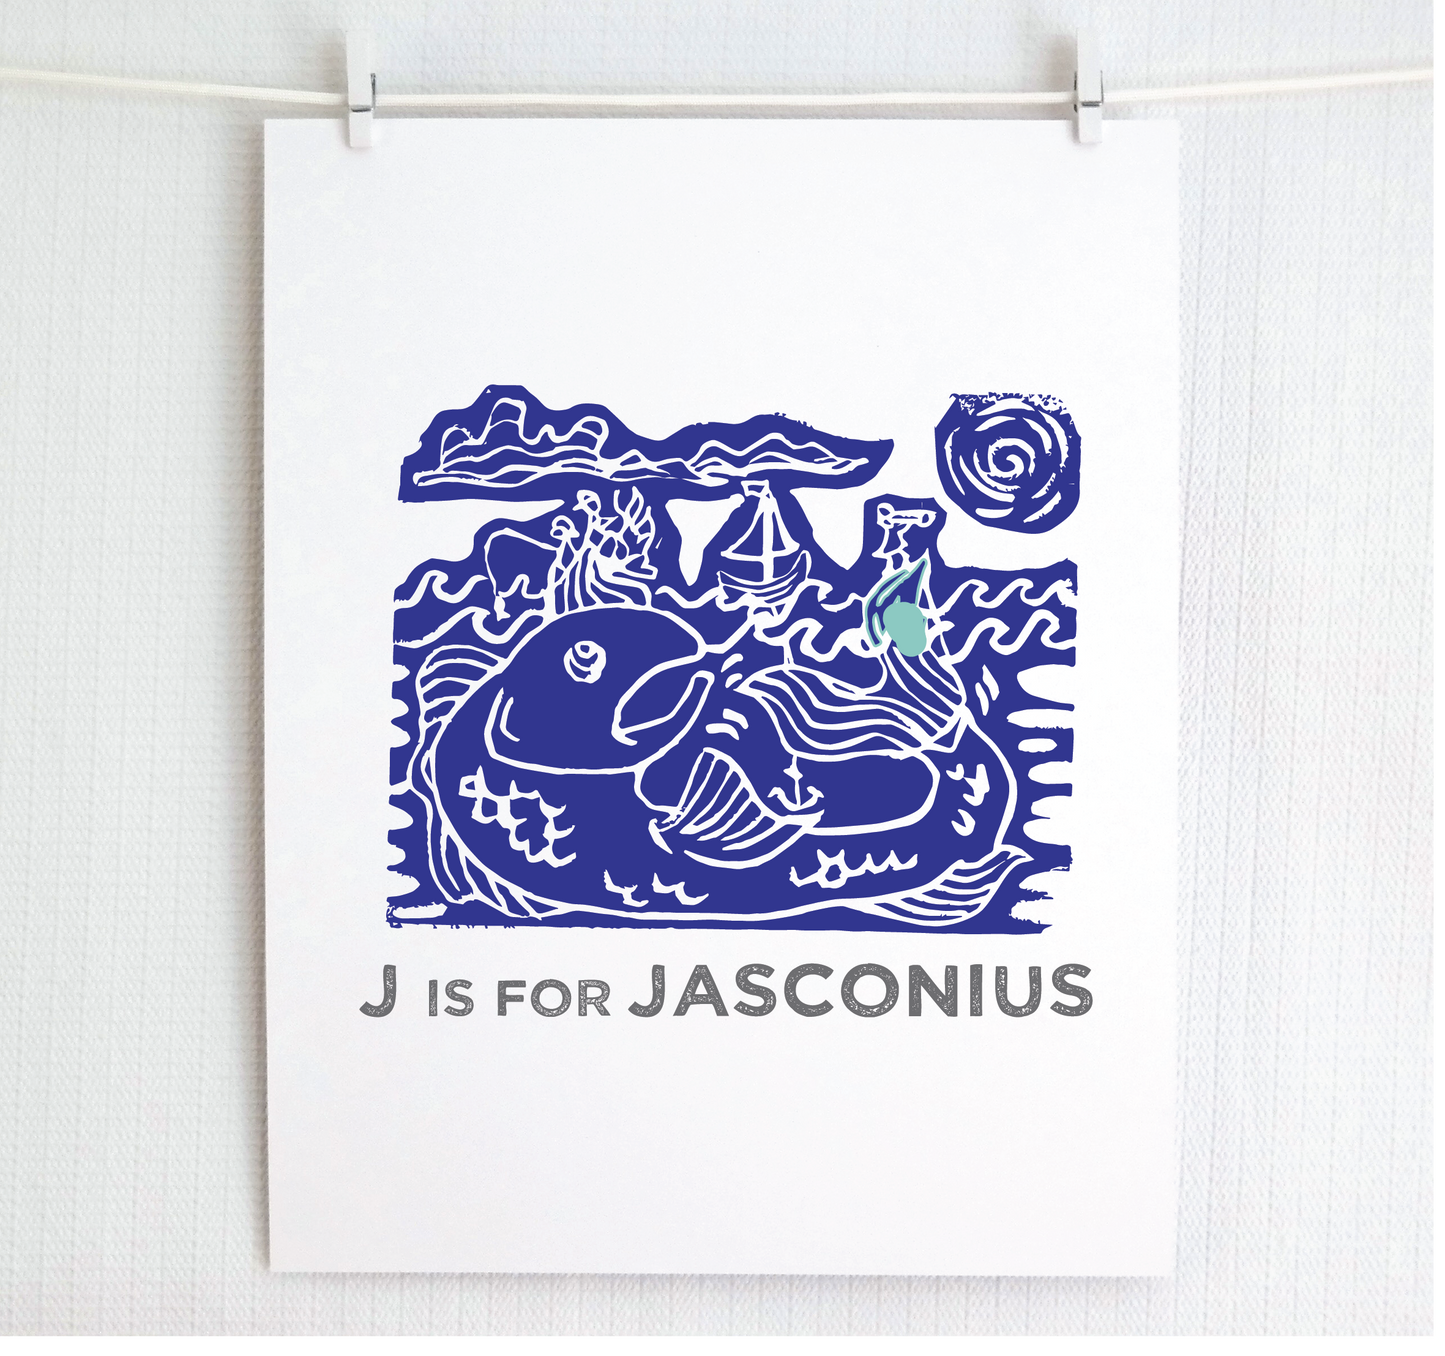 J is for Jasconius